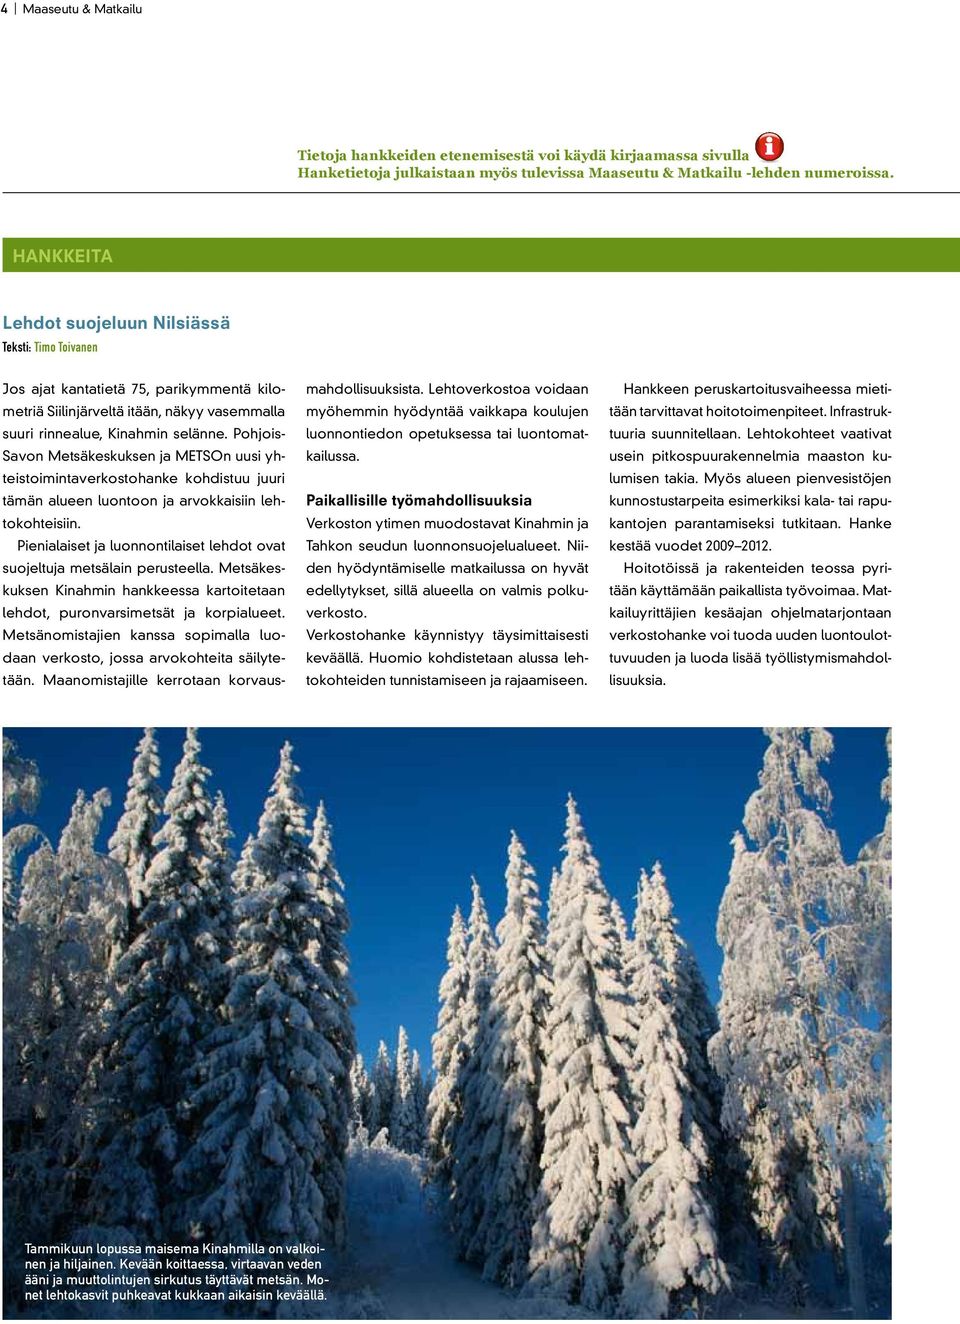 Pohjois- Savon Metsäkeskuksen ja METSOn uusi yhteistoimintaverkostohanke kohdistuu juuri tämän alueen luontoon ja arvokkaisiin lehtokohteisiin.